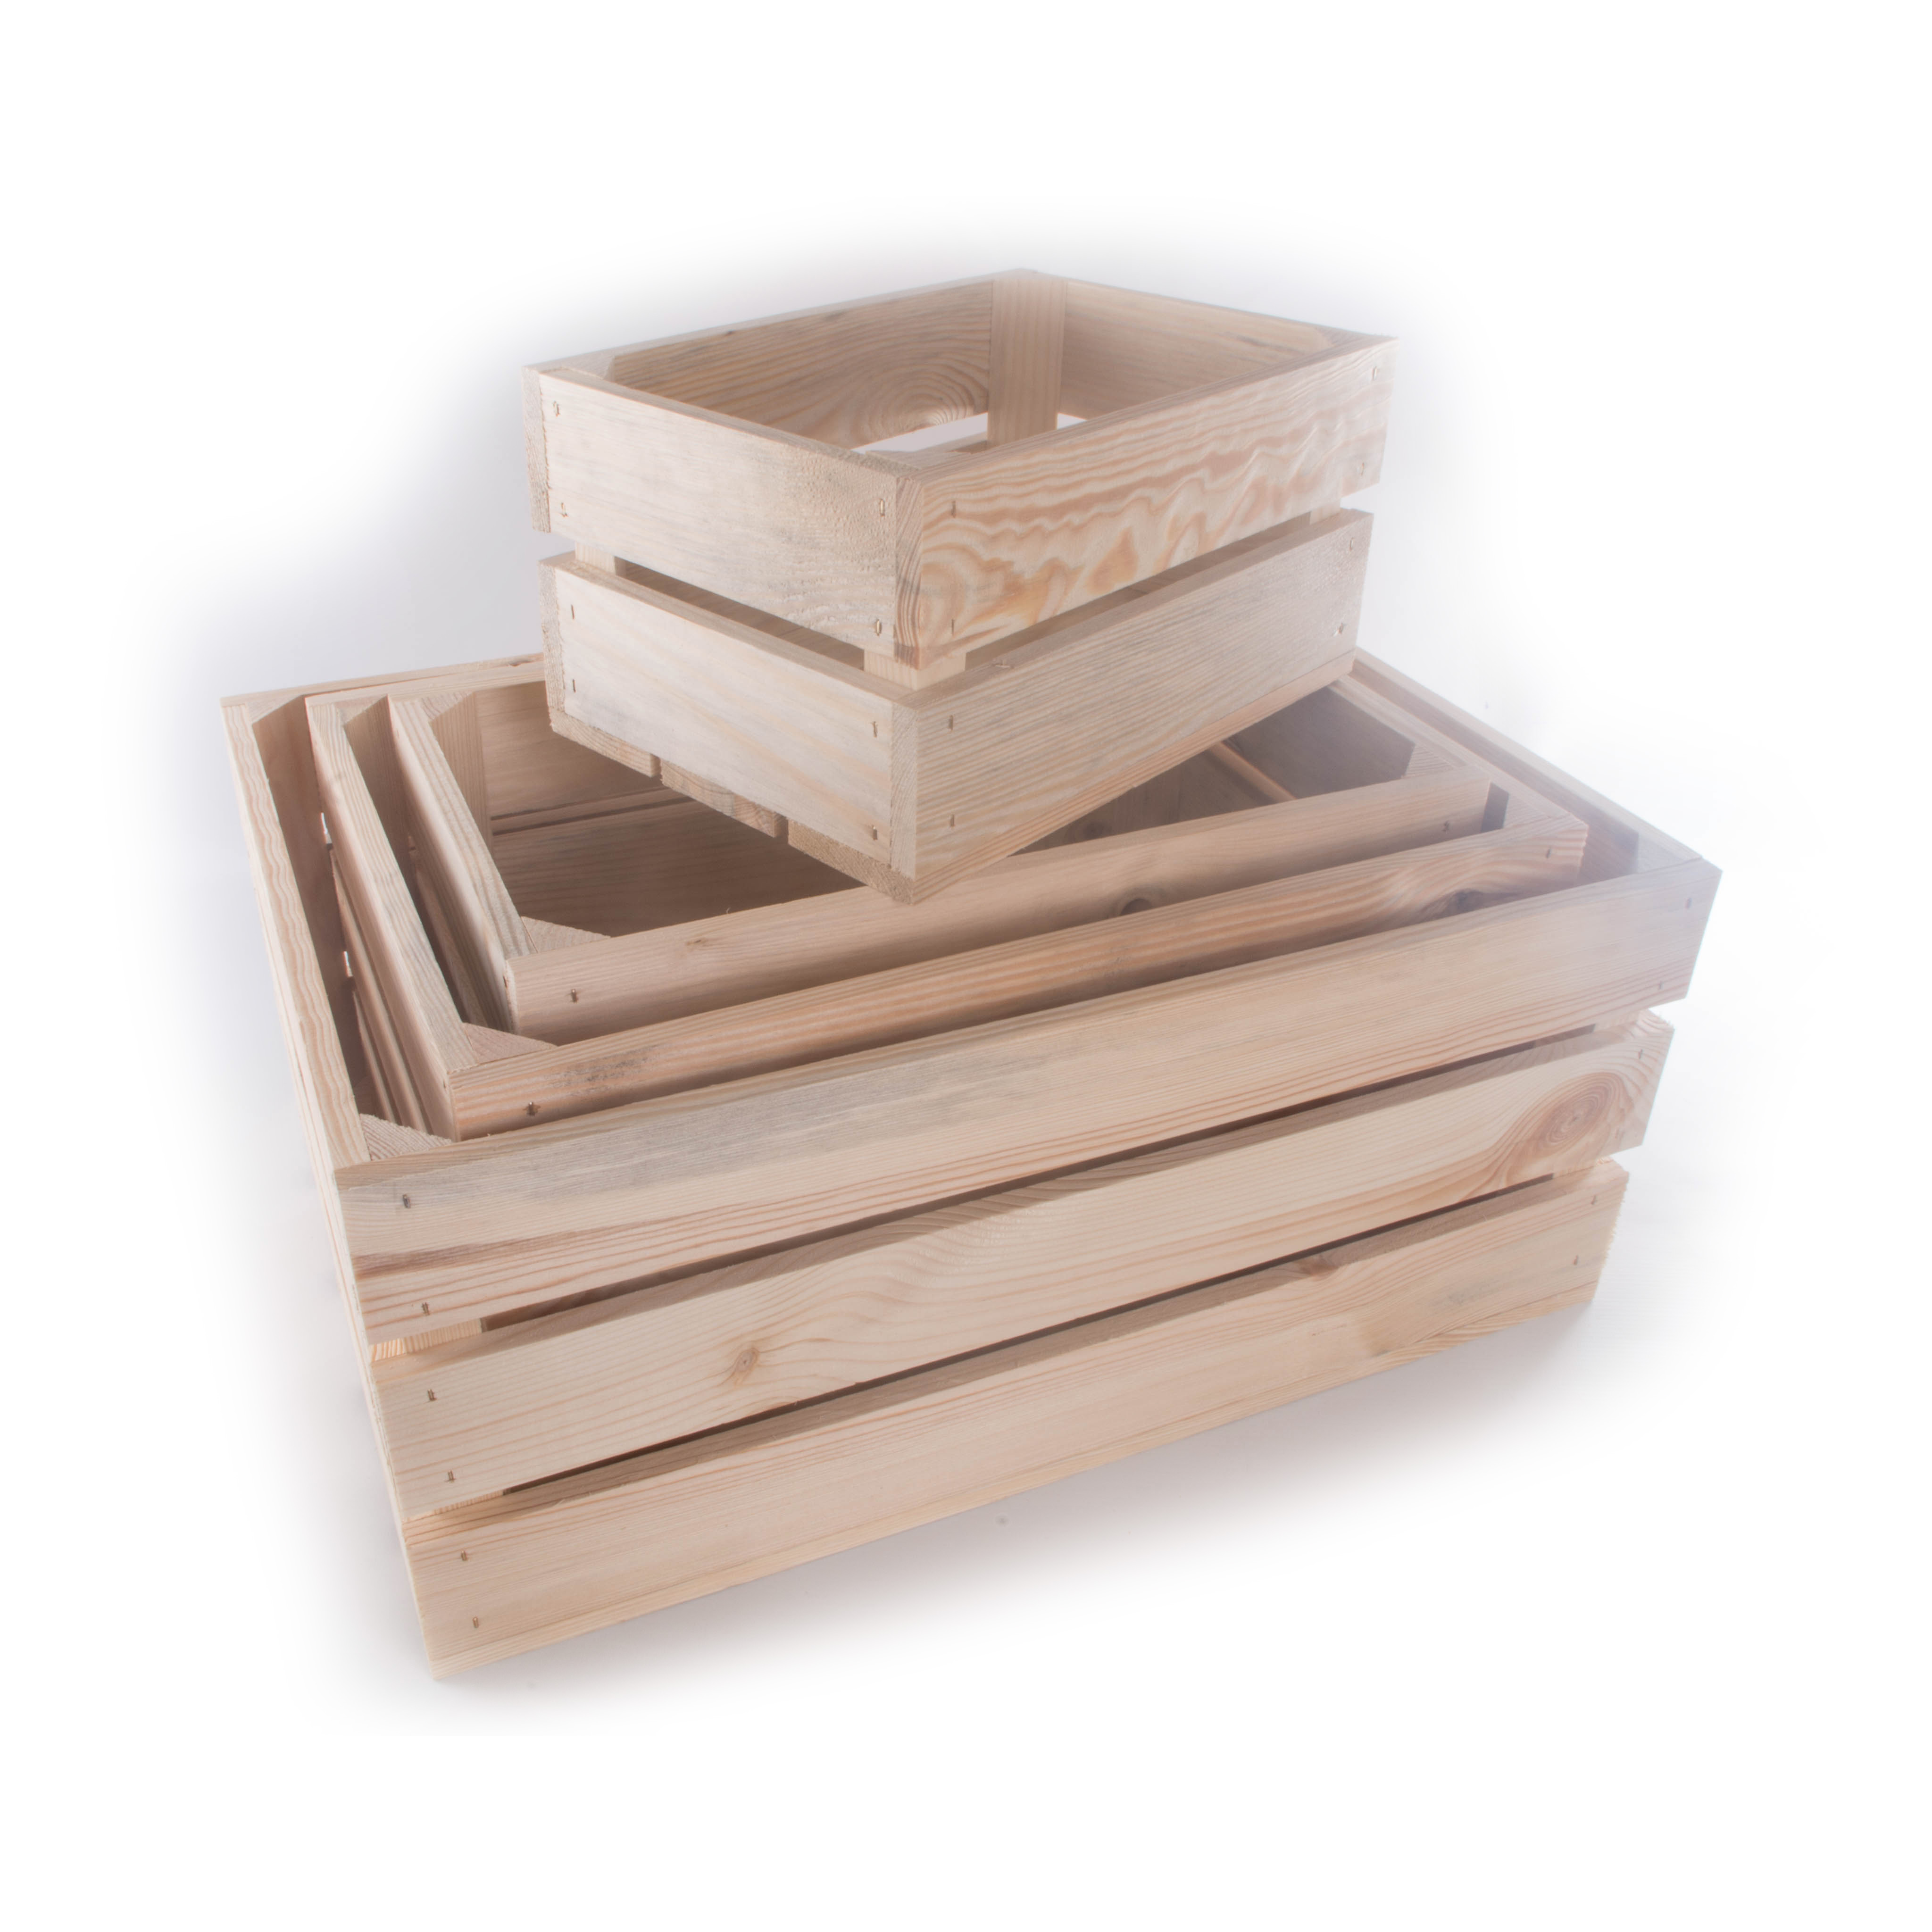 plain wooden crates